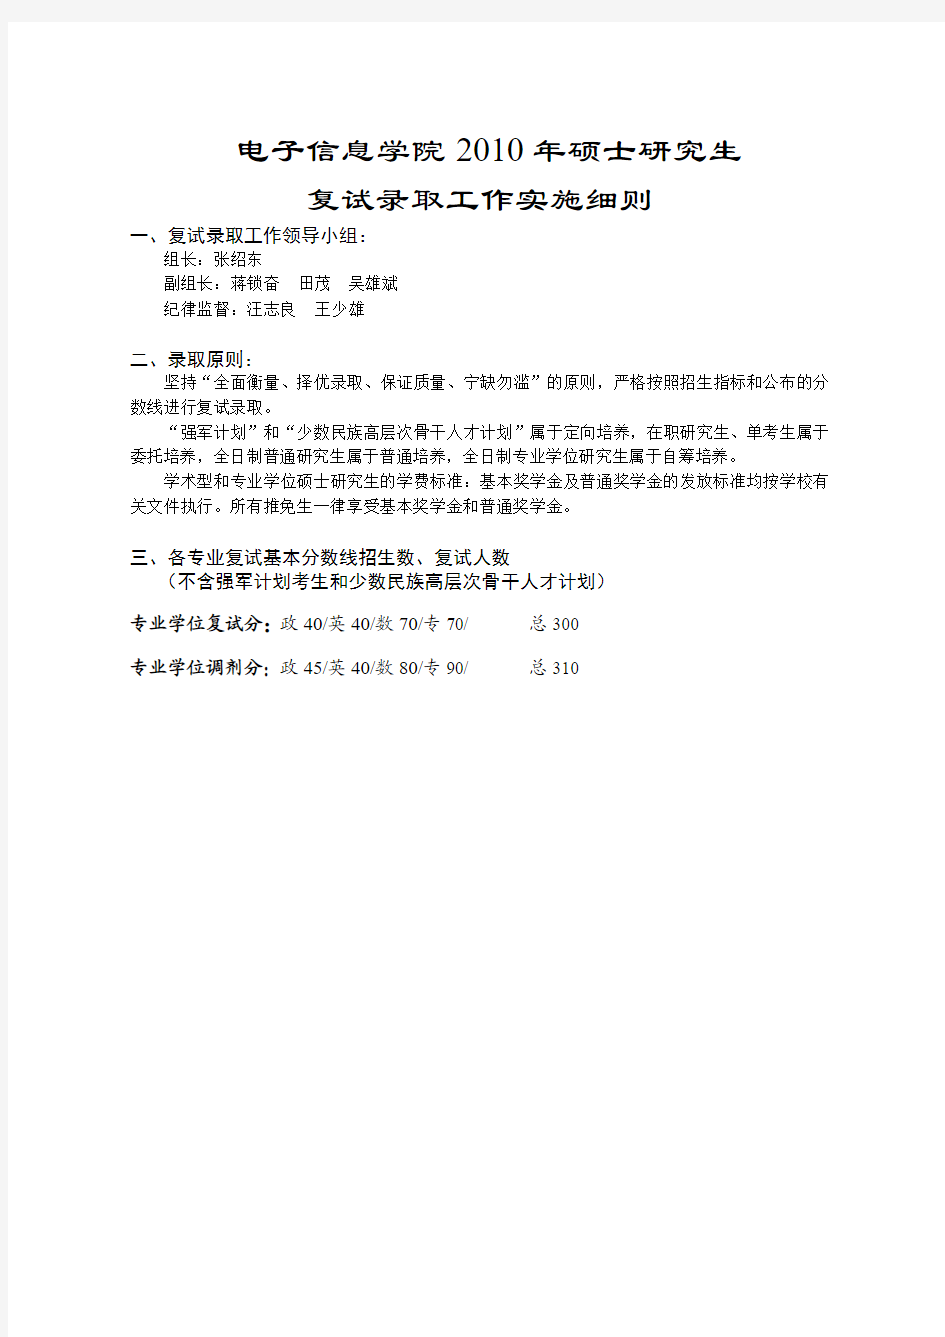 武汉大学2010电子信息学院复试录取工作实施细则